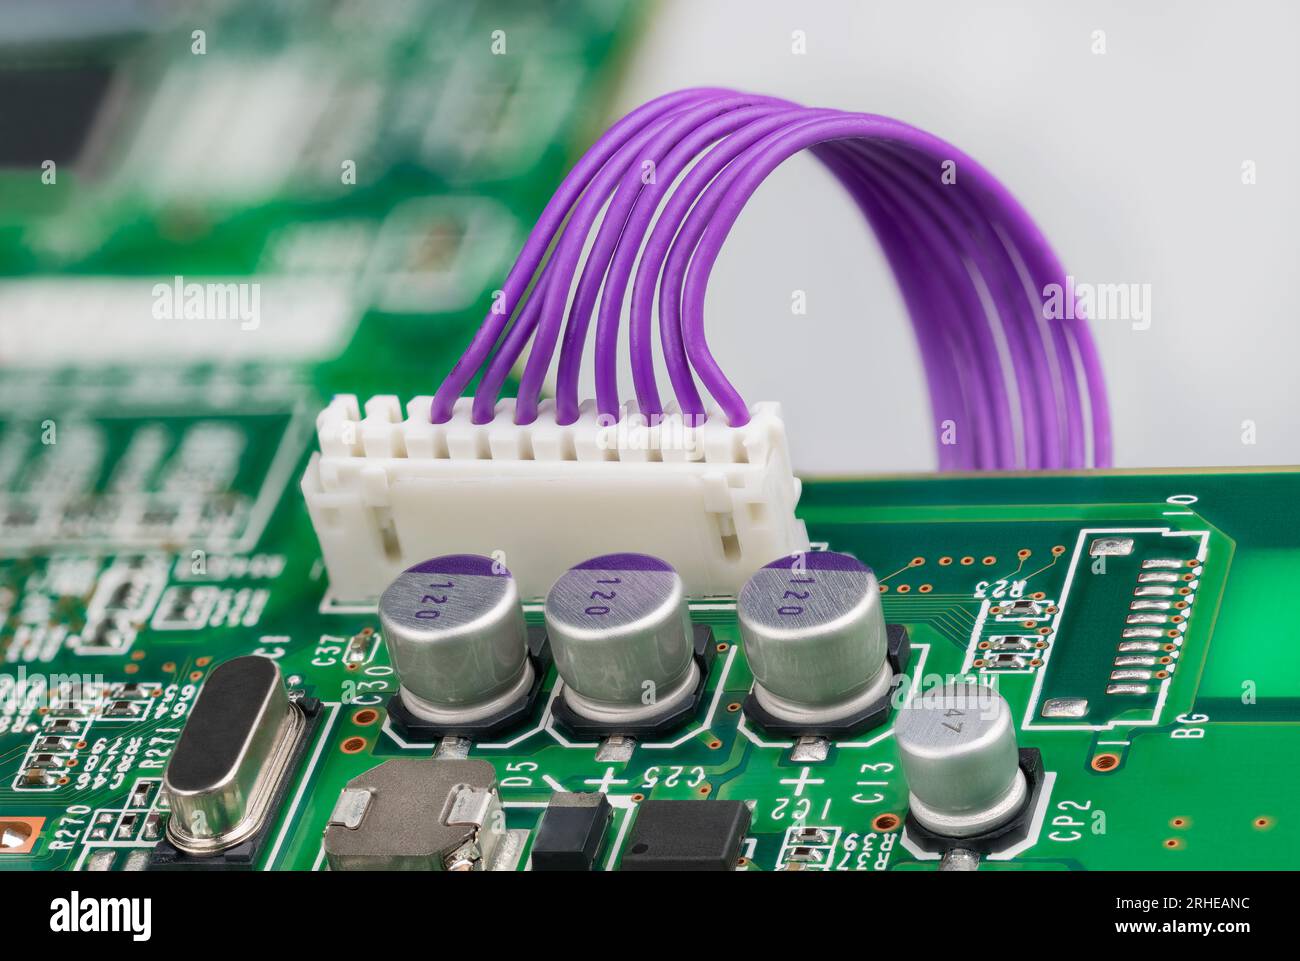 Condensateurs électrolytiques et connecteur en plastique blanc avec câbles violets, cristal ou diode sur carte verte. Circuit imprimé et composants électroniques. Banque D'Images